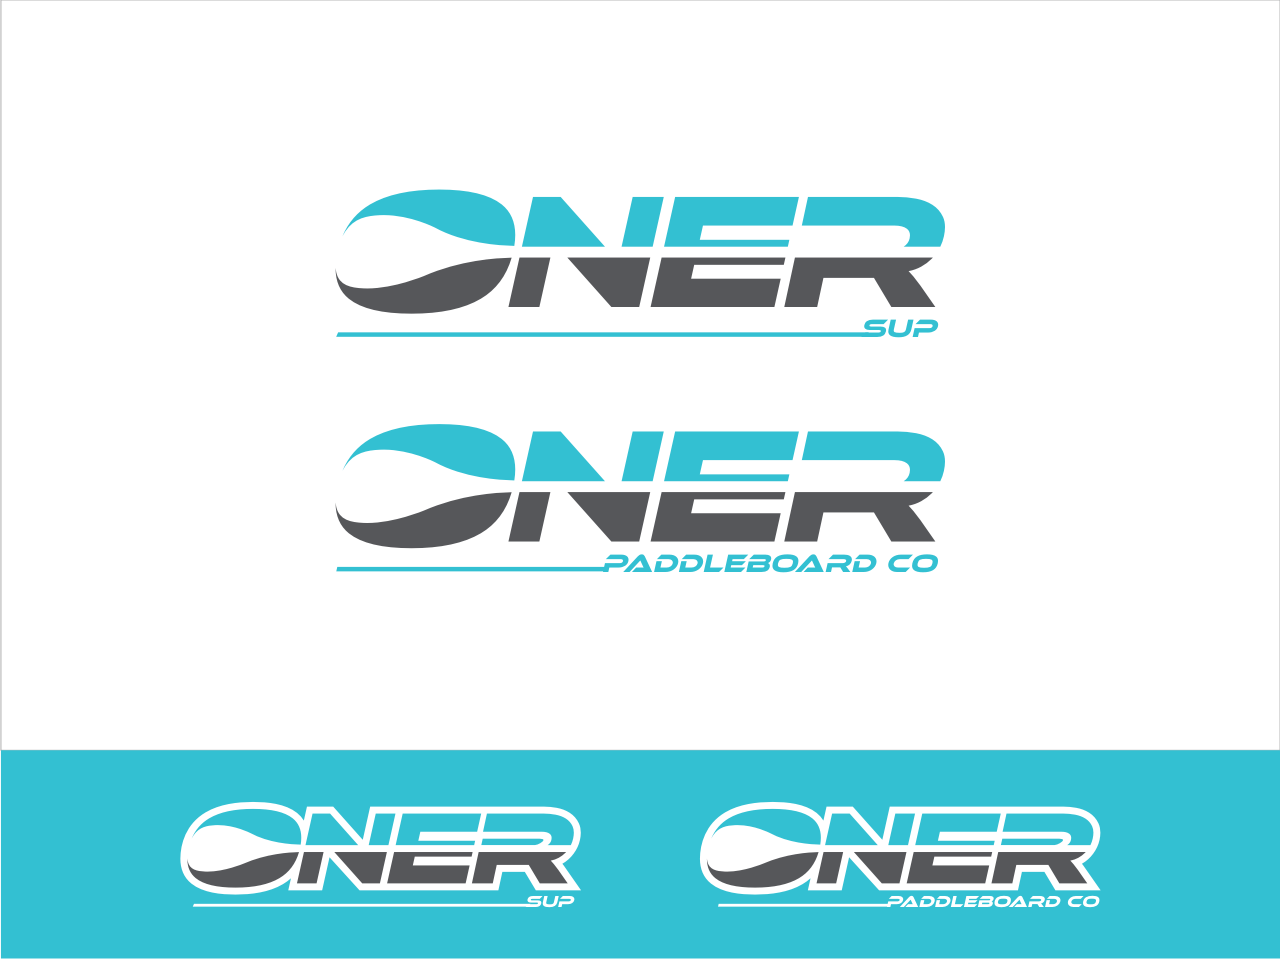 Paddleboard Logo - Logo Design. 'ONER / ONER SUP / ONER PADDLEBOARD CO' design